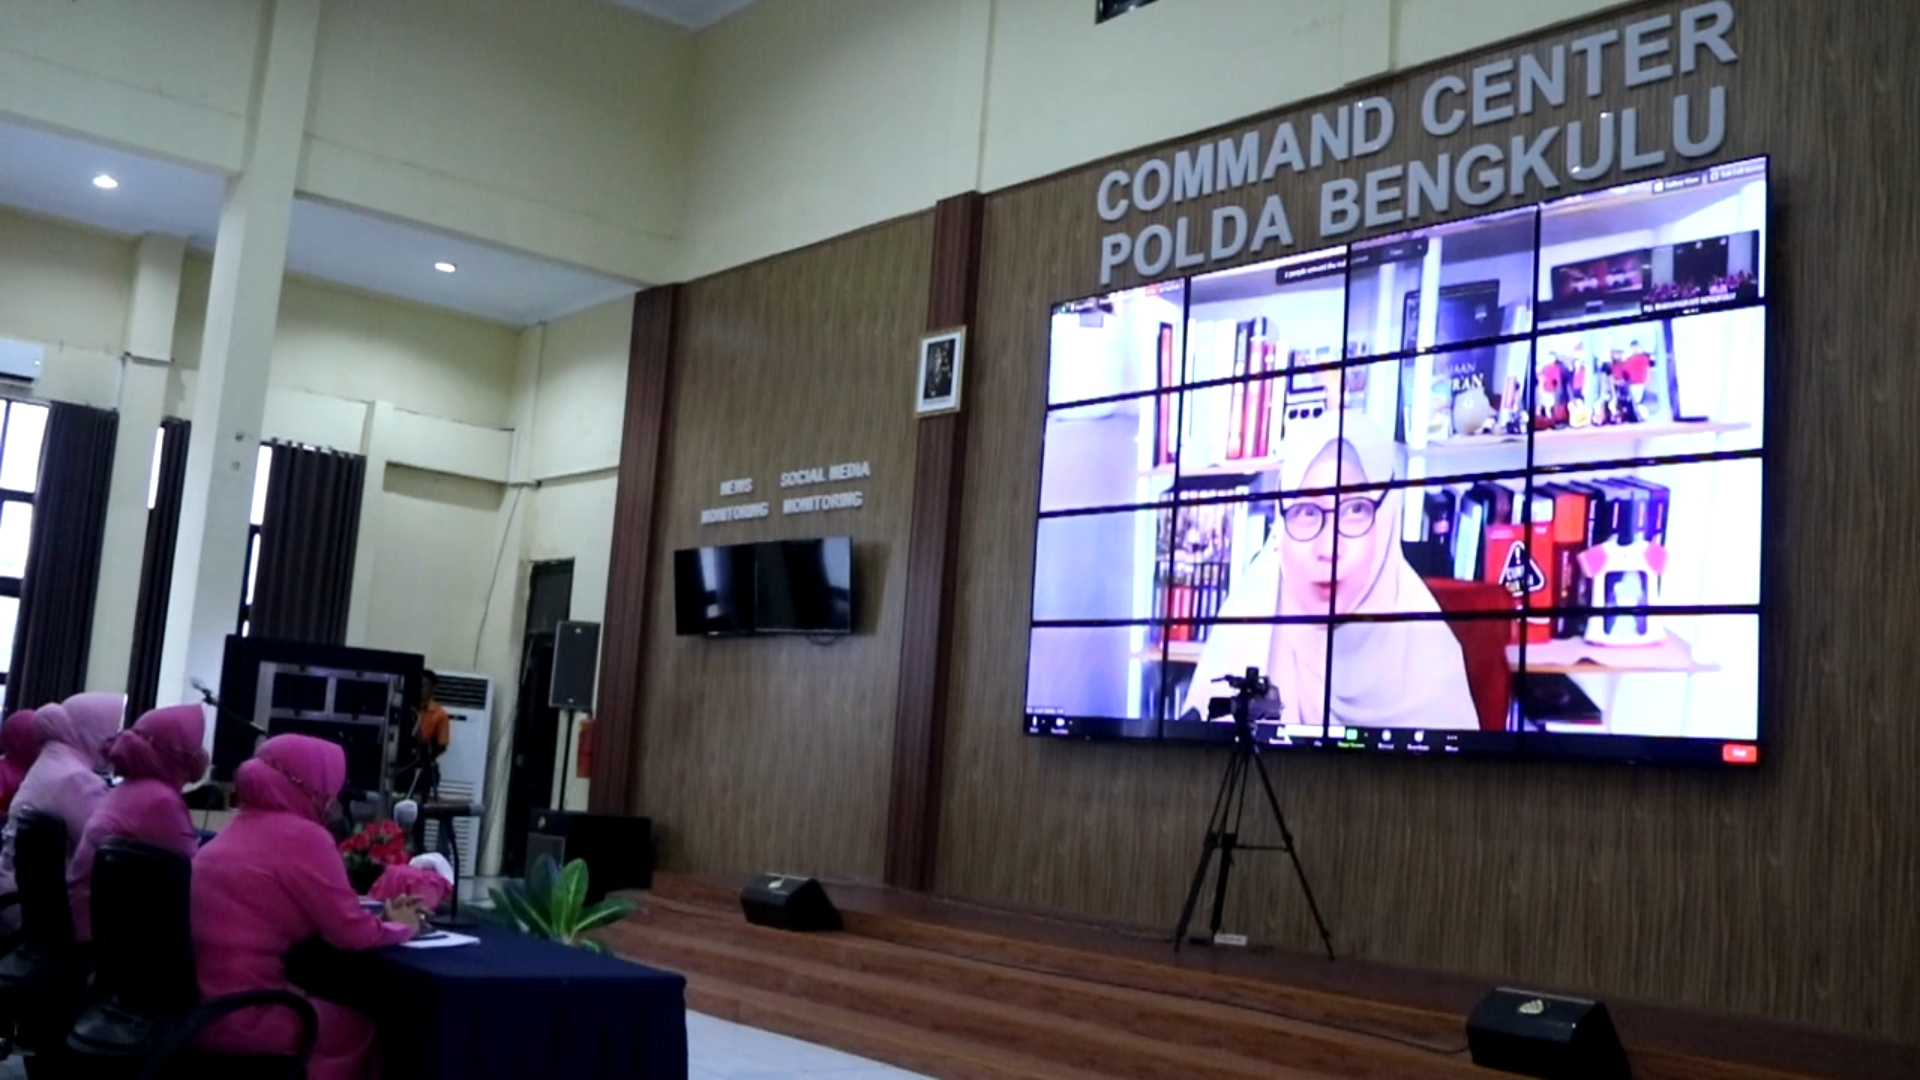 Undang dr. Aisha Dahlan, Bhayangkari Daerah Bengkulu Angkat Tema Webinar Lindungi Pelecehan Seksual Dari Orang Terdekat